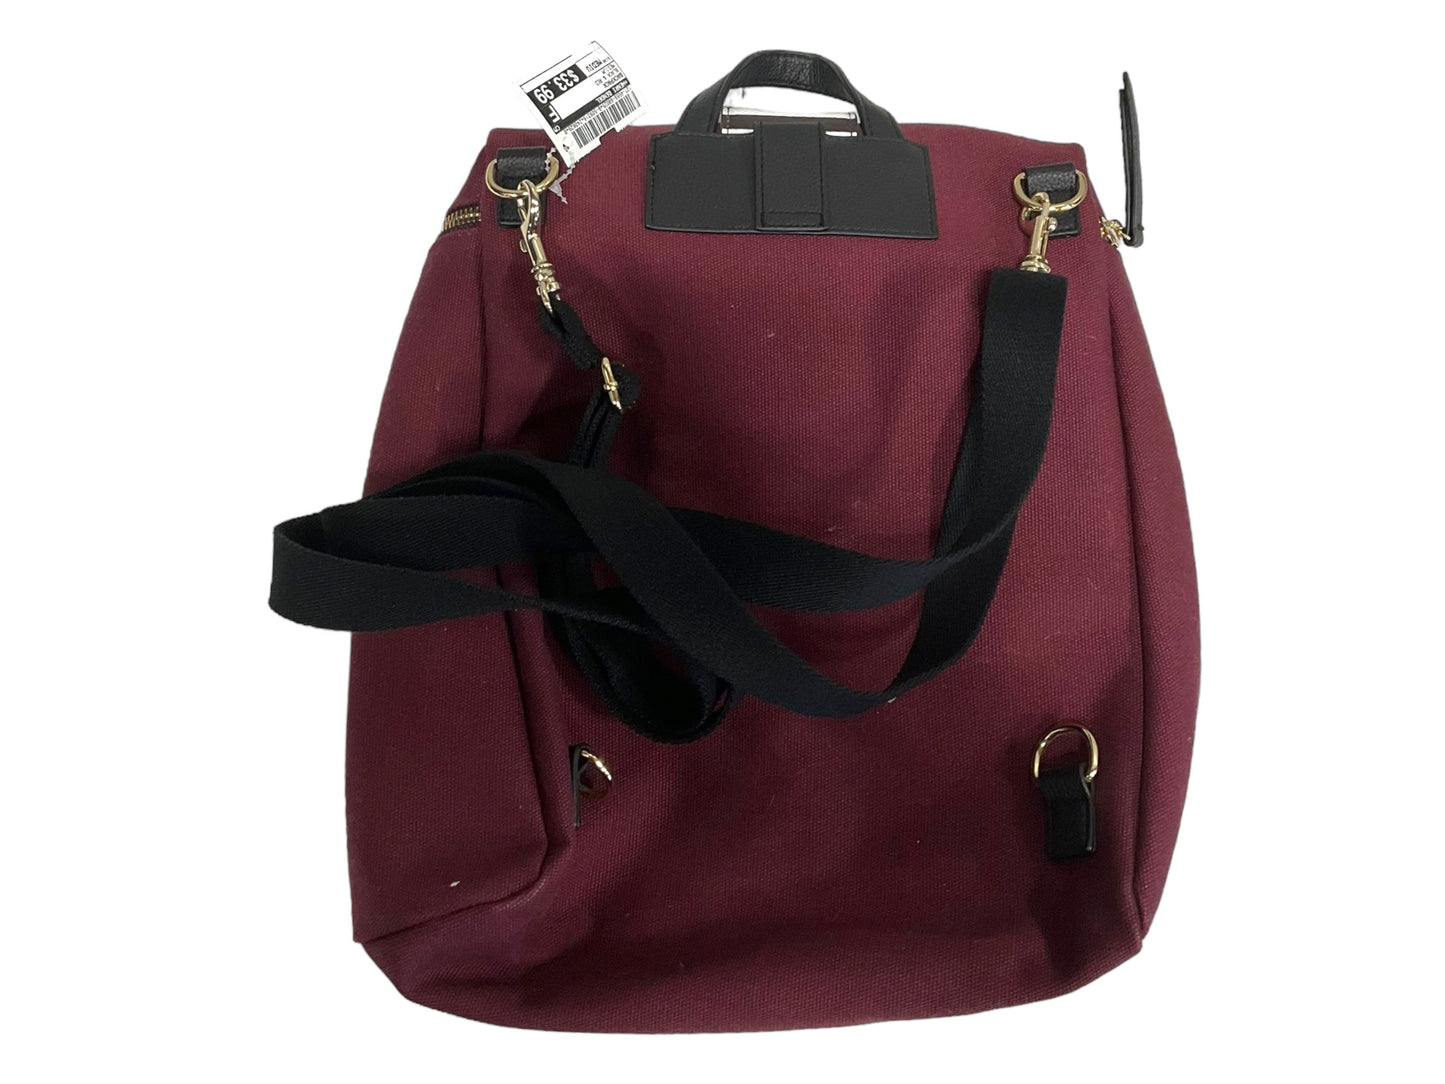 Backpack Henri Bendel, Size Medium